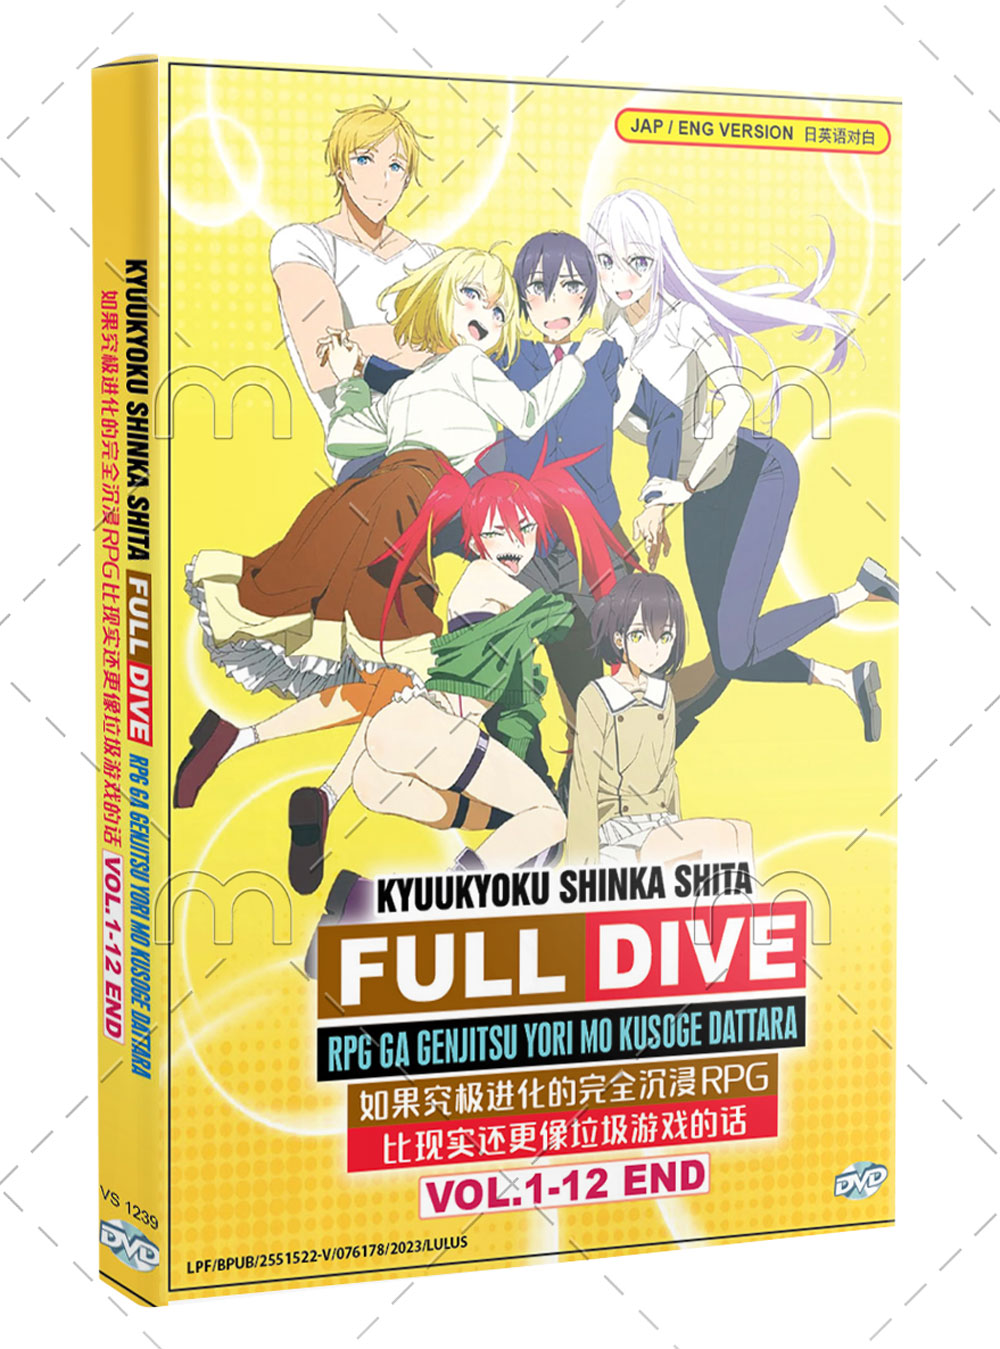 Kyuukyoku Shinka shita Full Dive RPG ga Genjitsu yori mo Kusoge Dattara (DVD) (2021) Anime